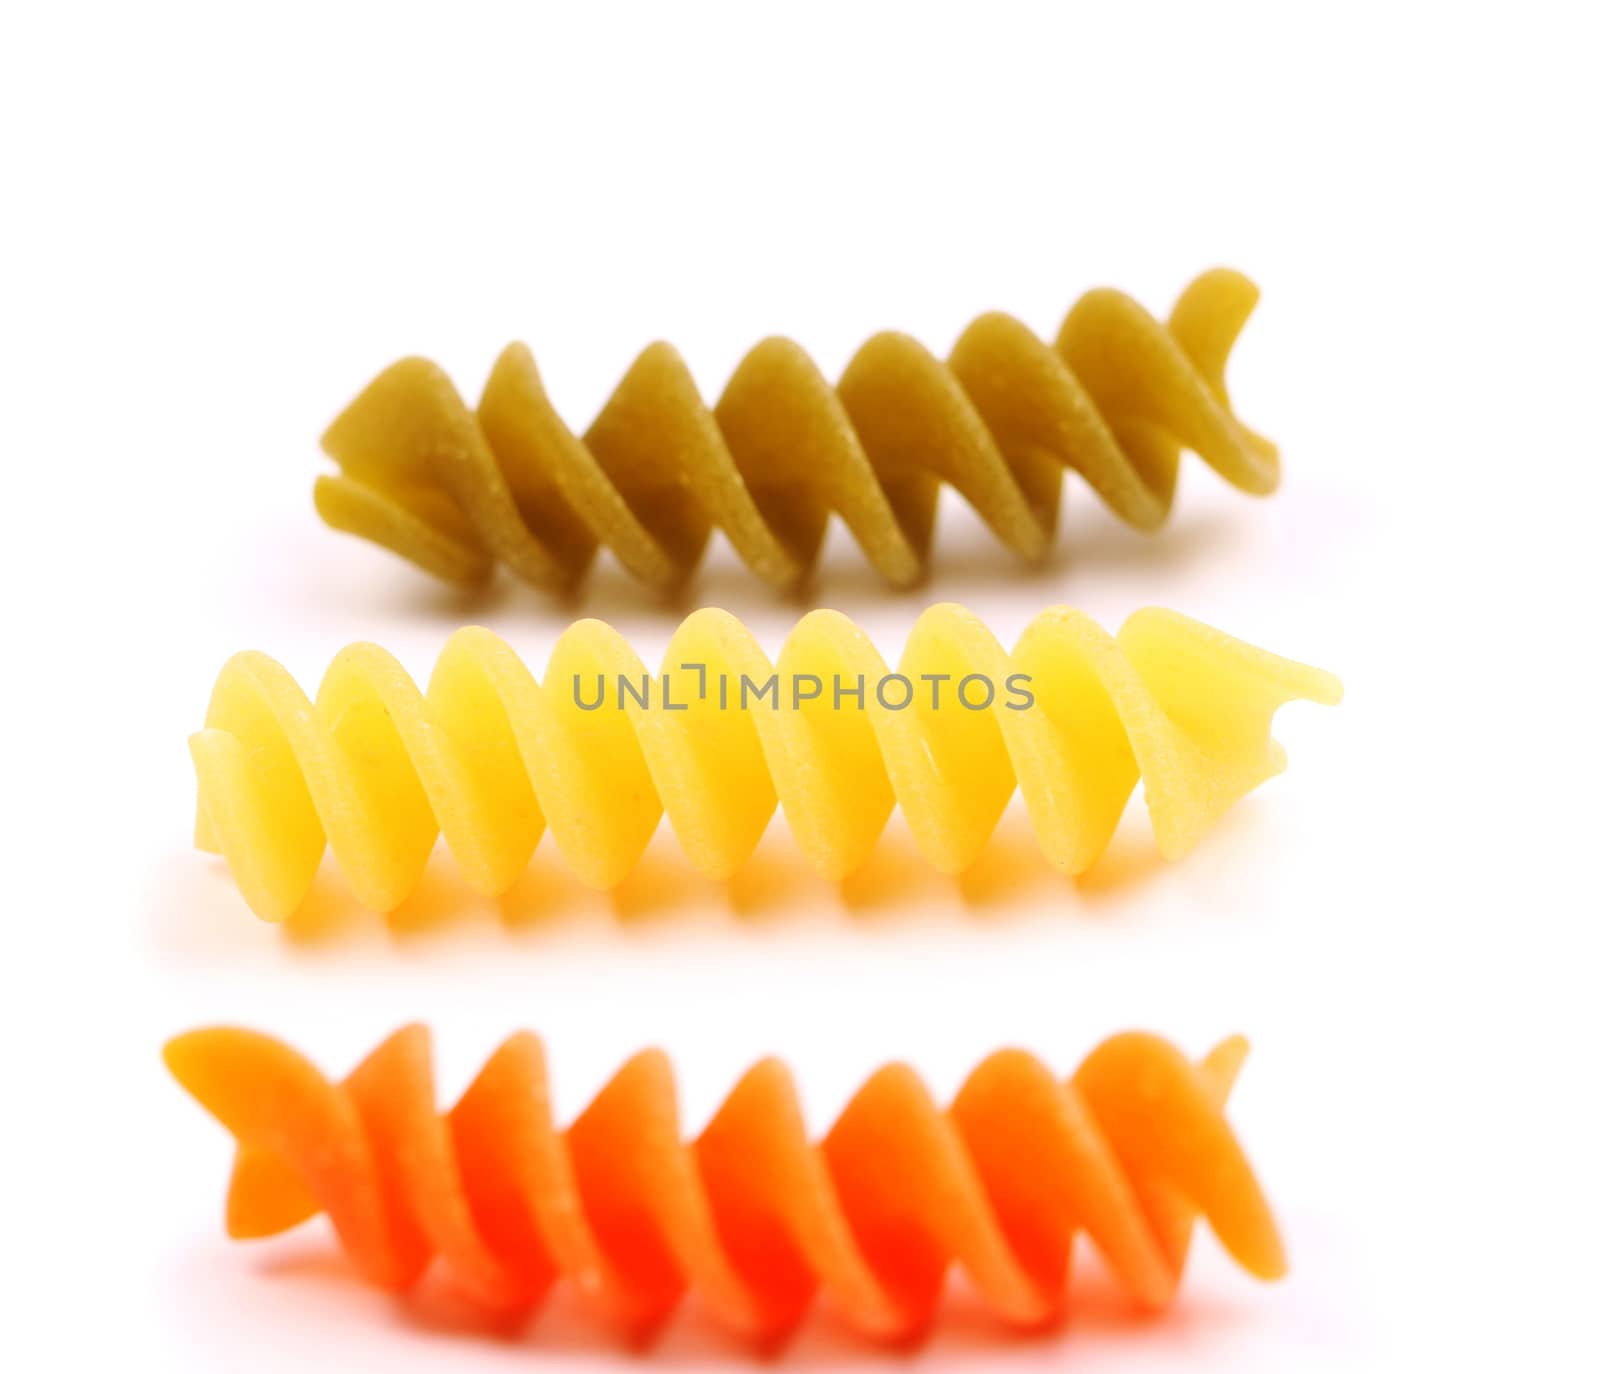 Close-up pasta eliche tricolori are located on the white background.